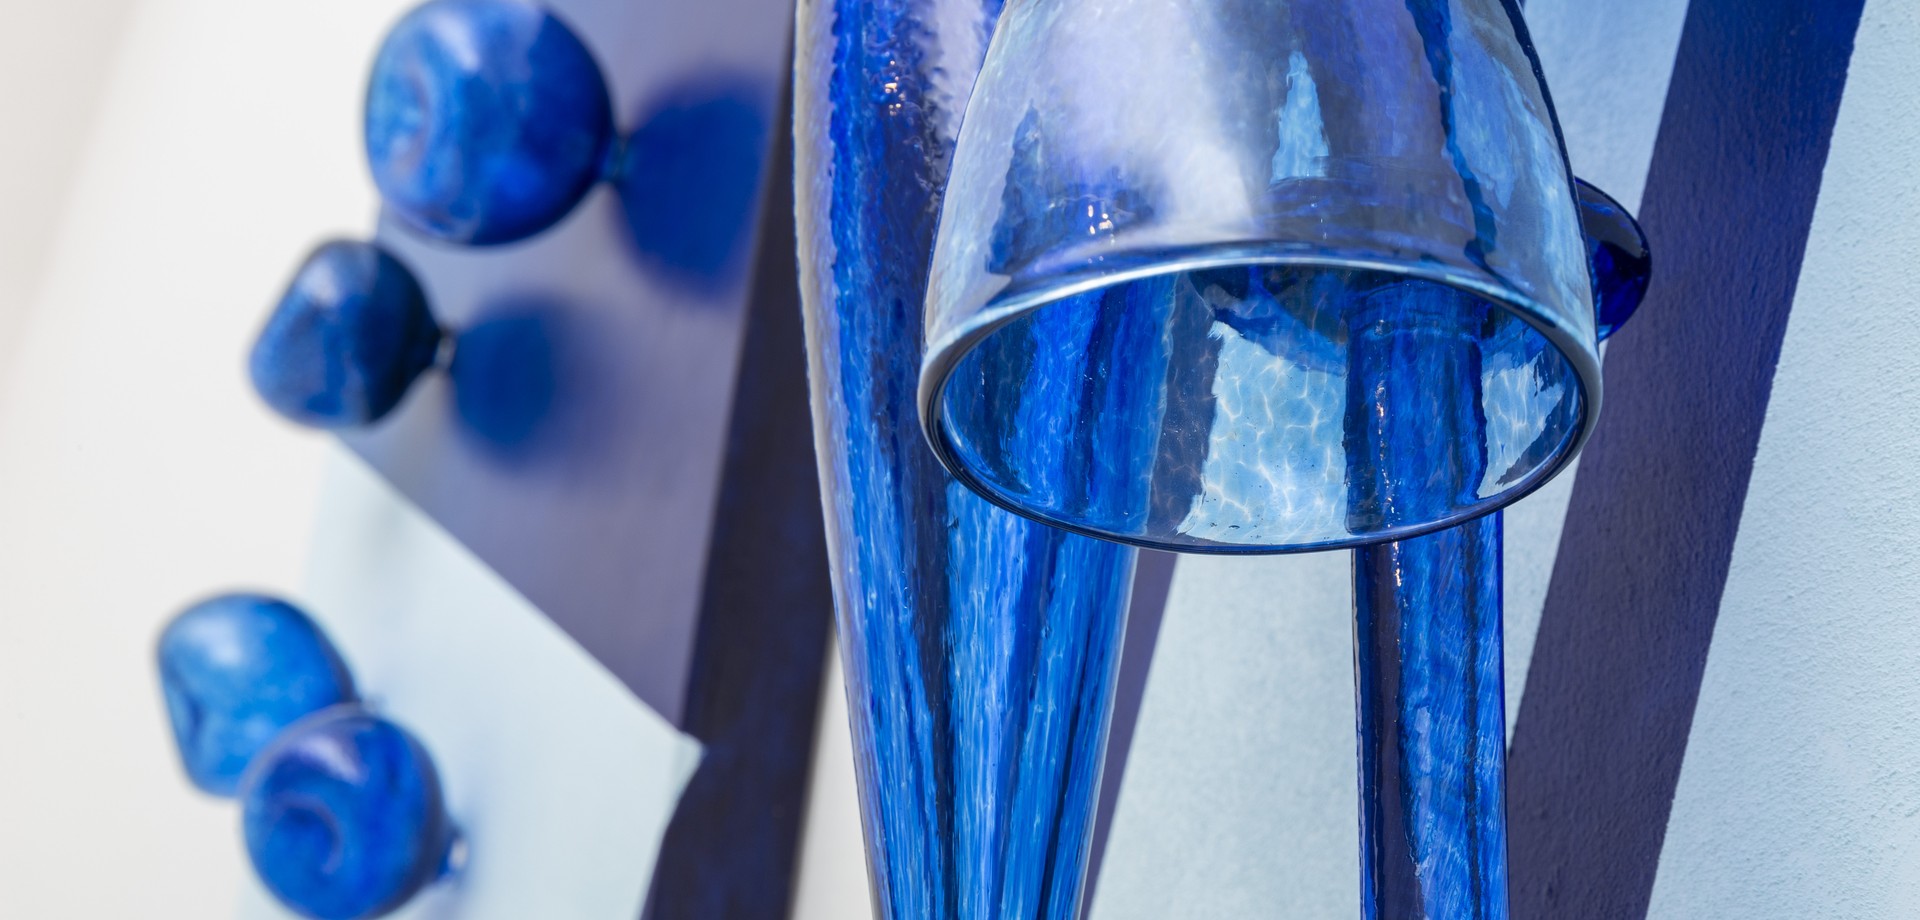 Das Objekt "Triptichon" von Bernadett Hegyvári. Blau gehalten aus verschiedenen gläsernen Objekten